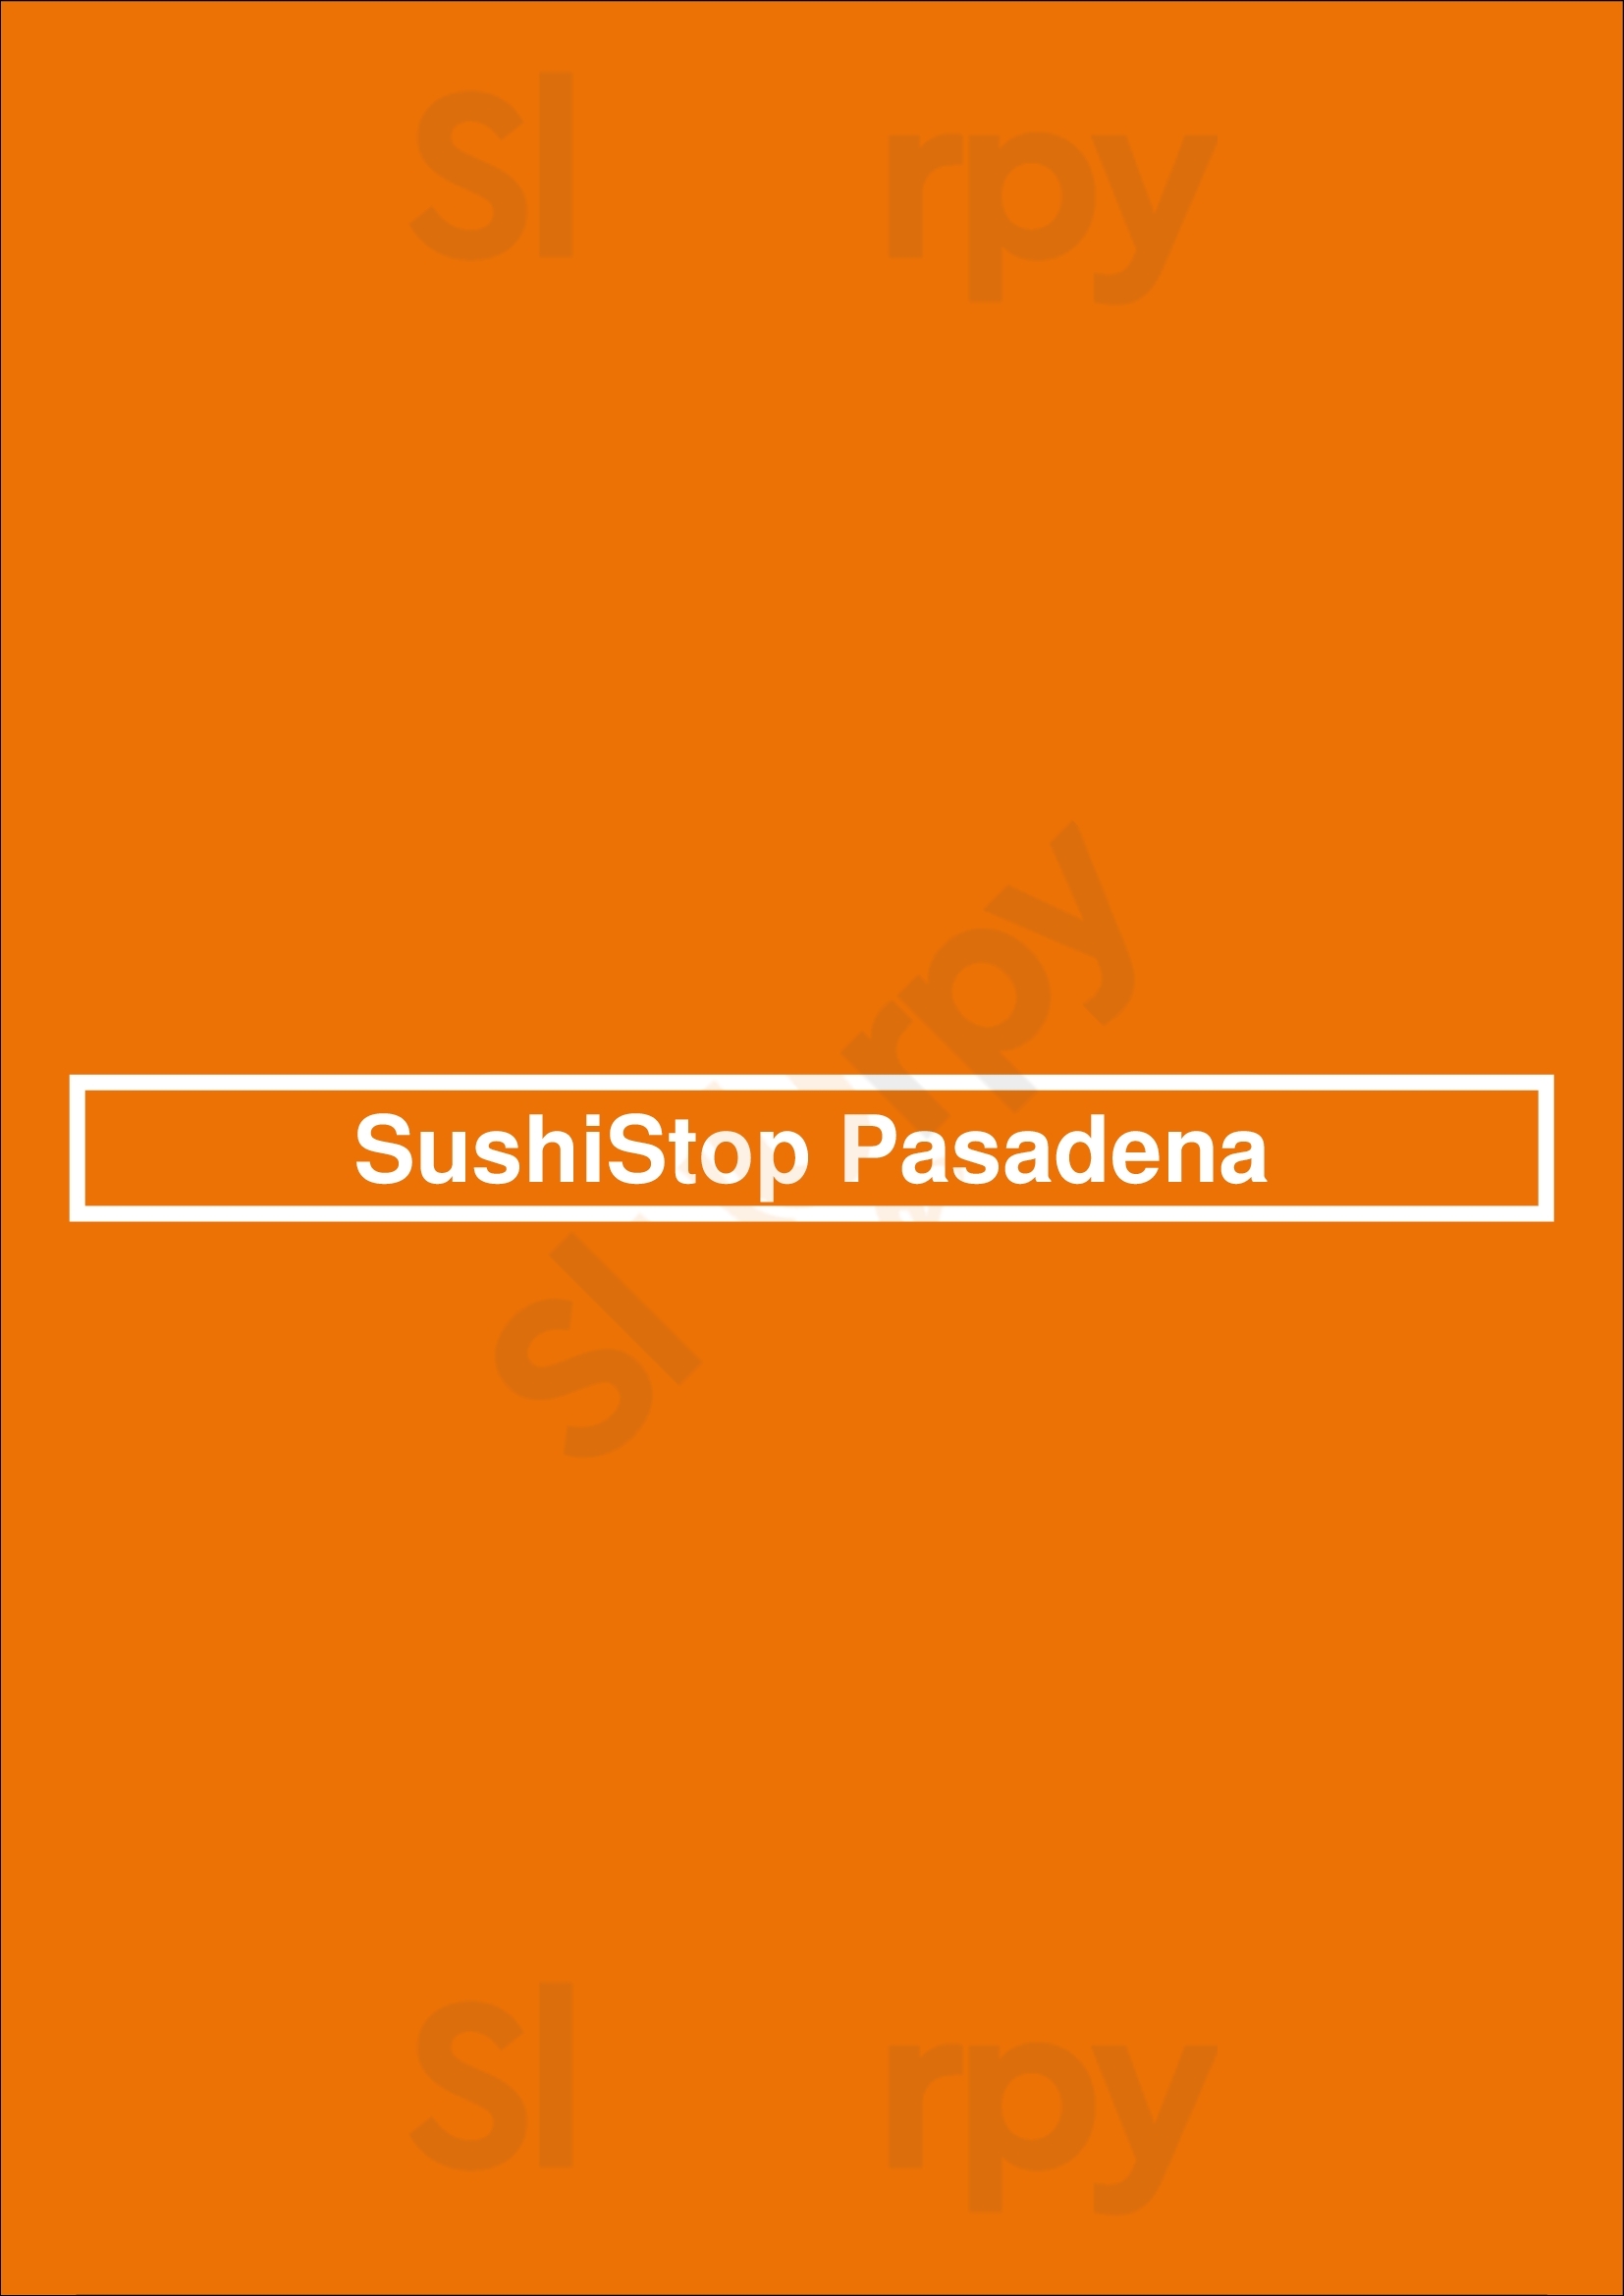 Sushistop Pasadena Pasadena Menu - 1